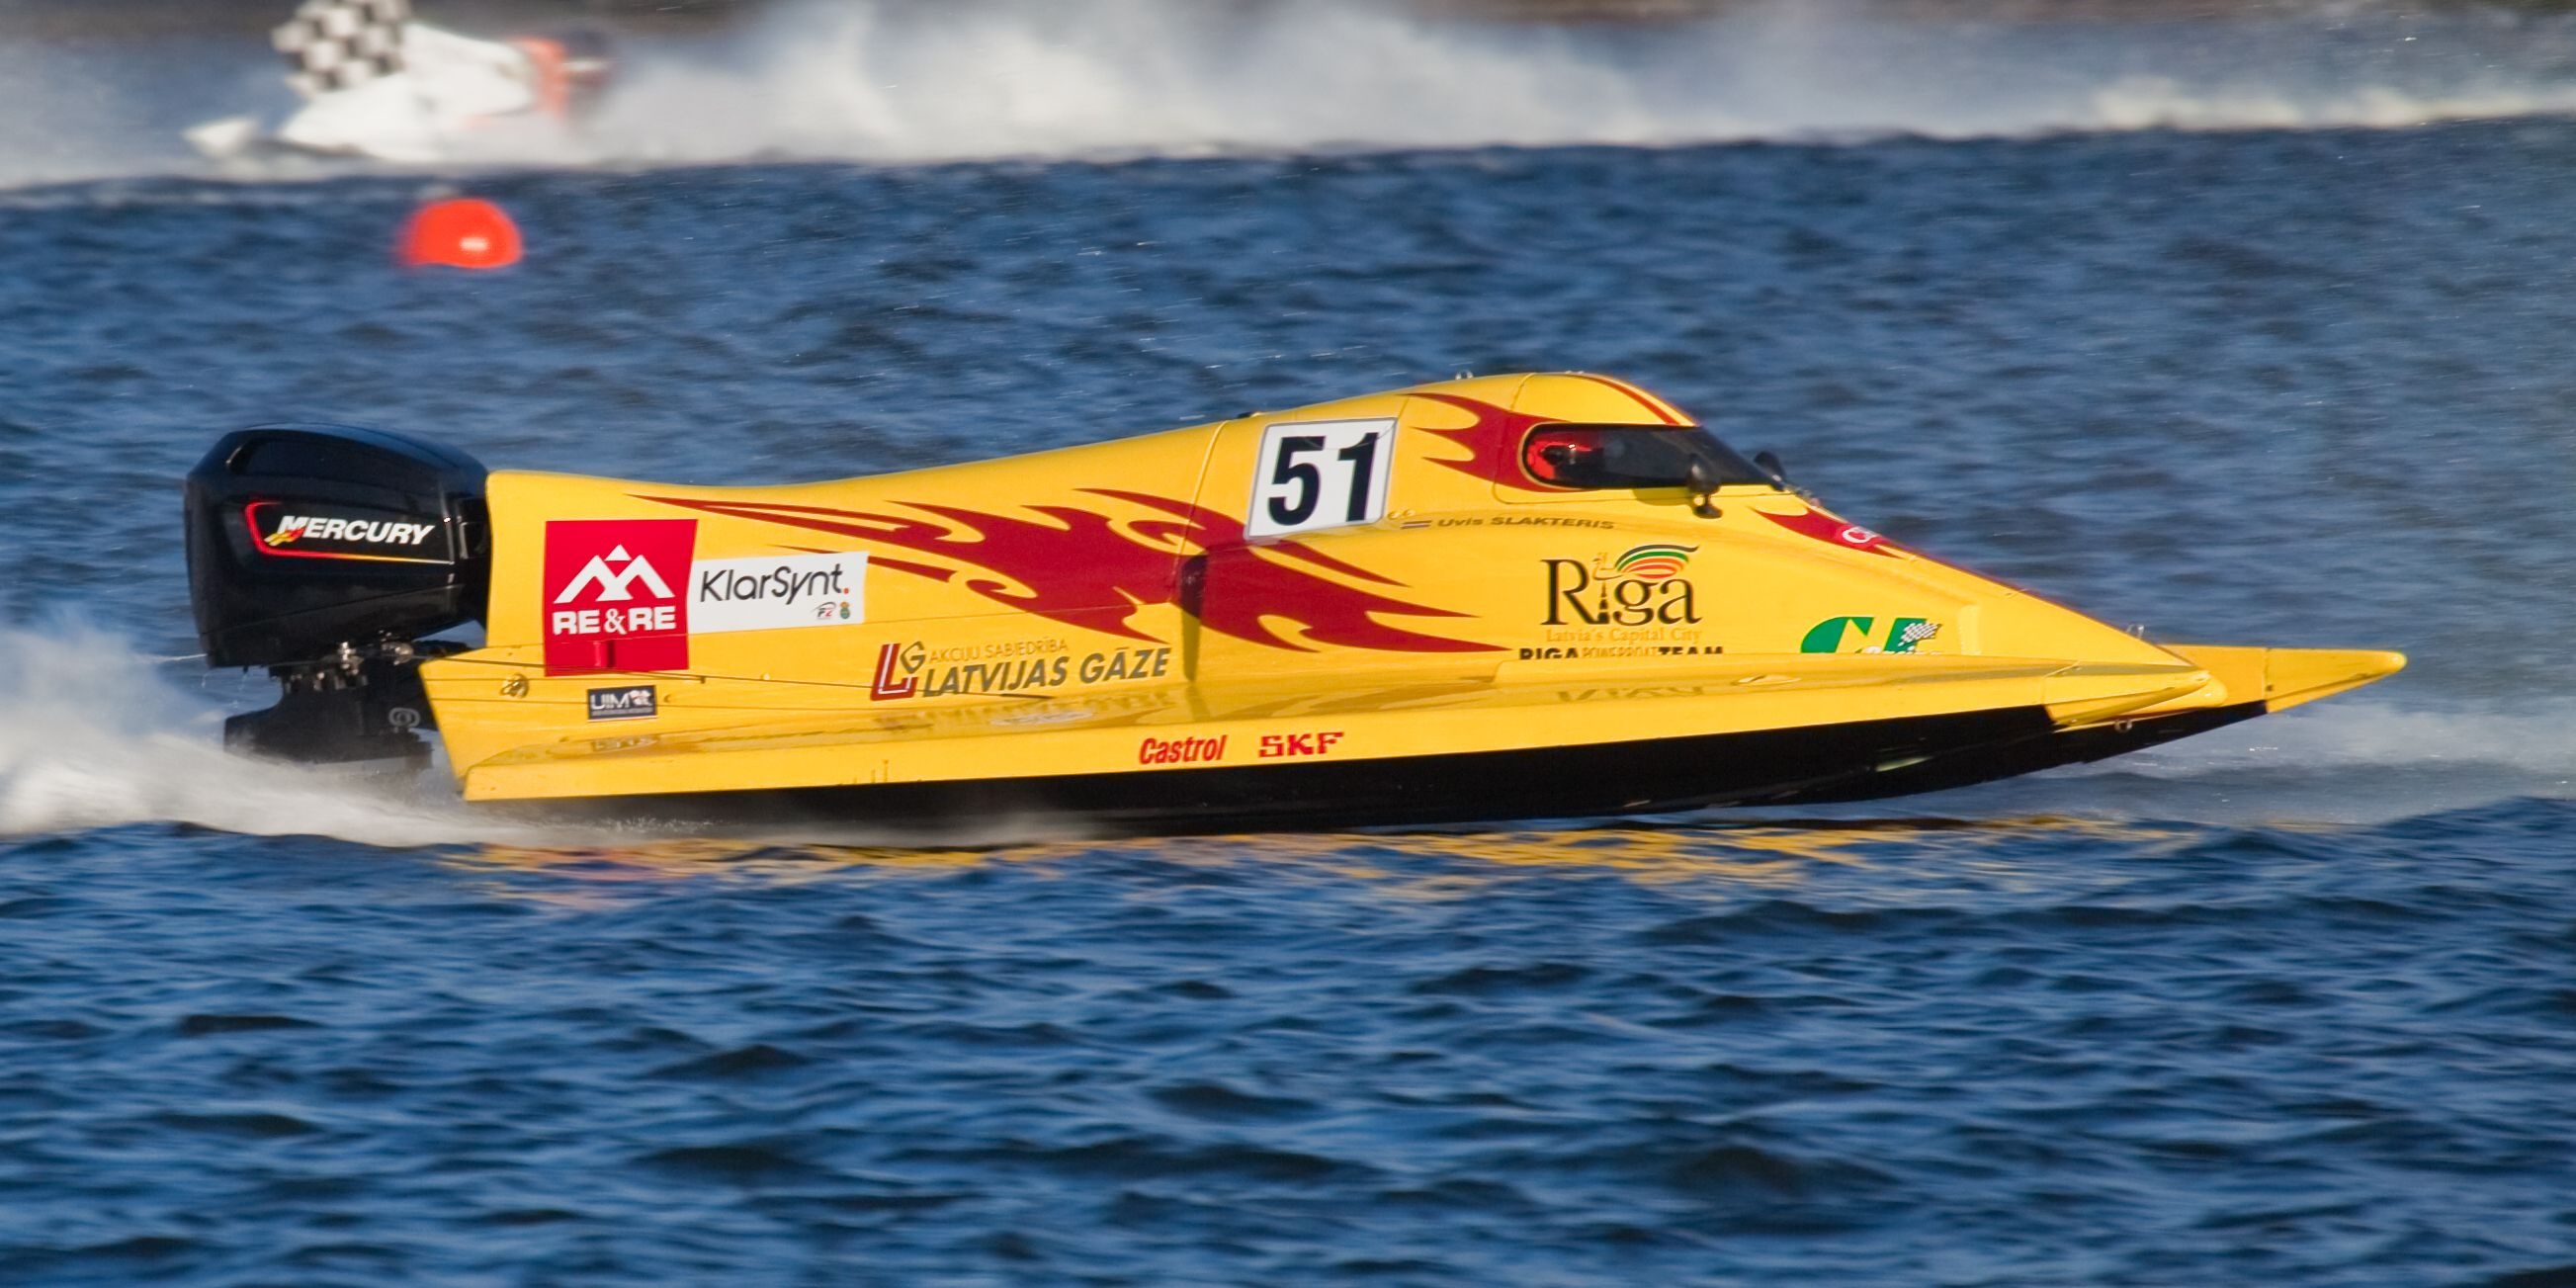 Hydroplane: Boat Race, Inboard Powerboat Circuit, Vessel, Lake. 2610x1310 HD Wallpaper.